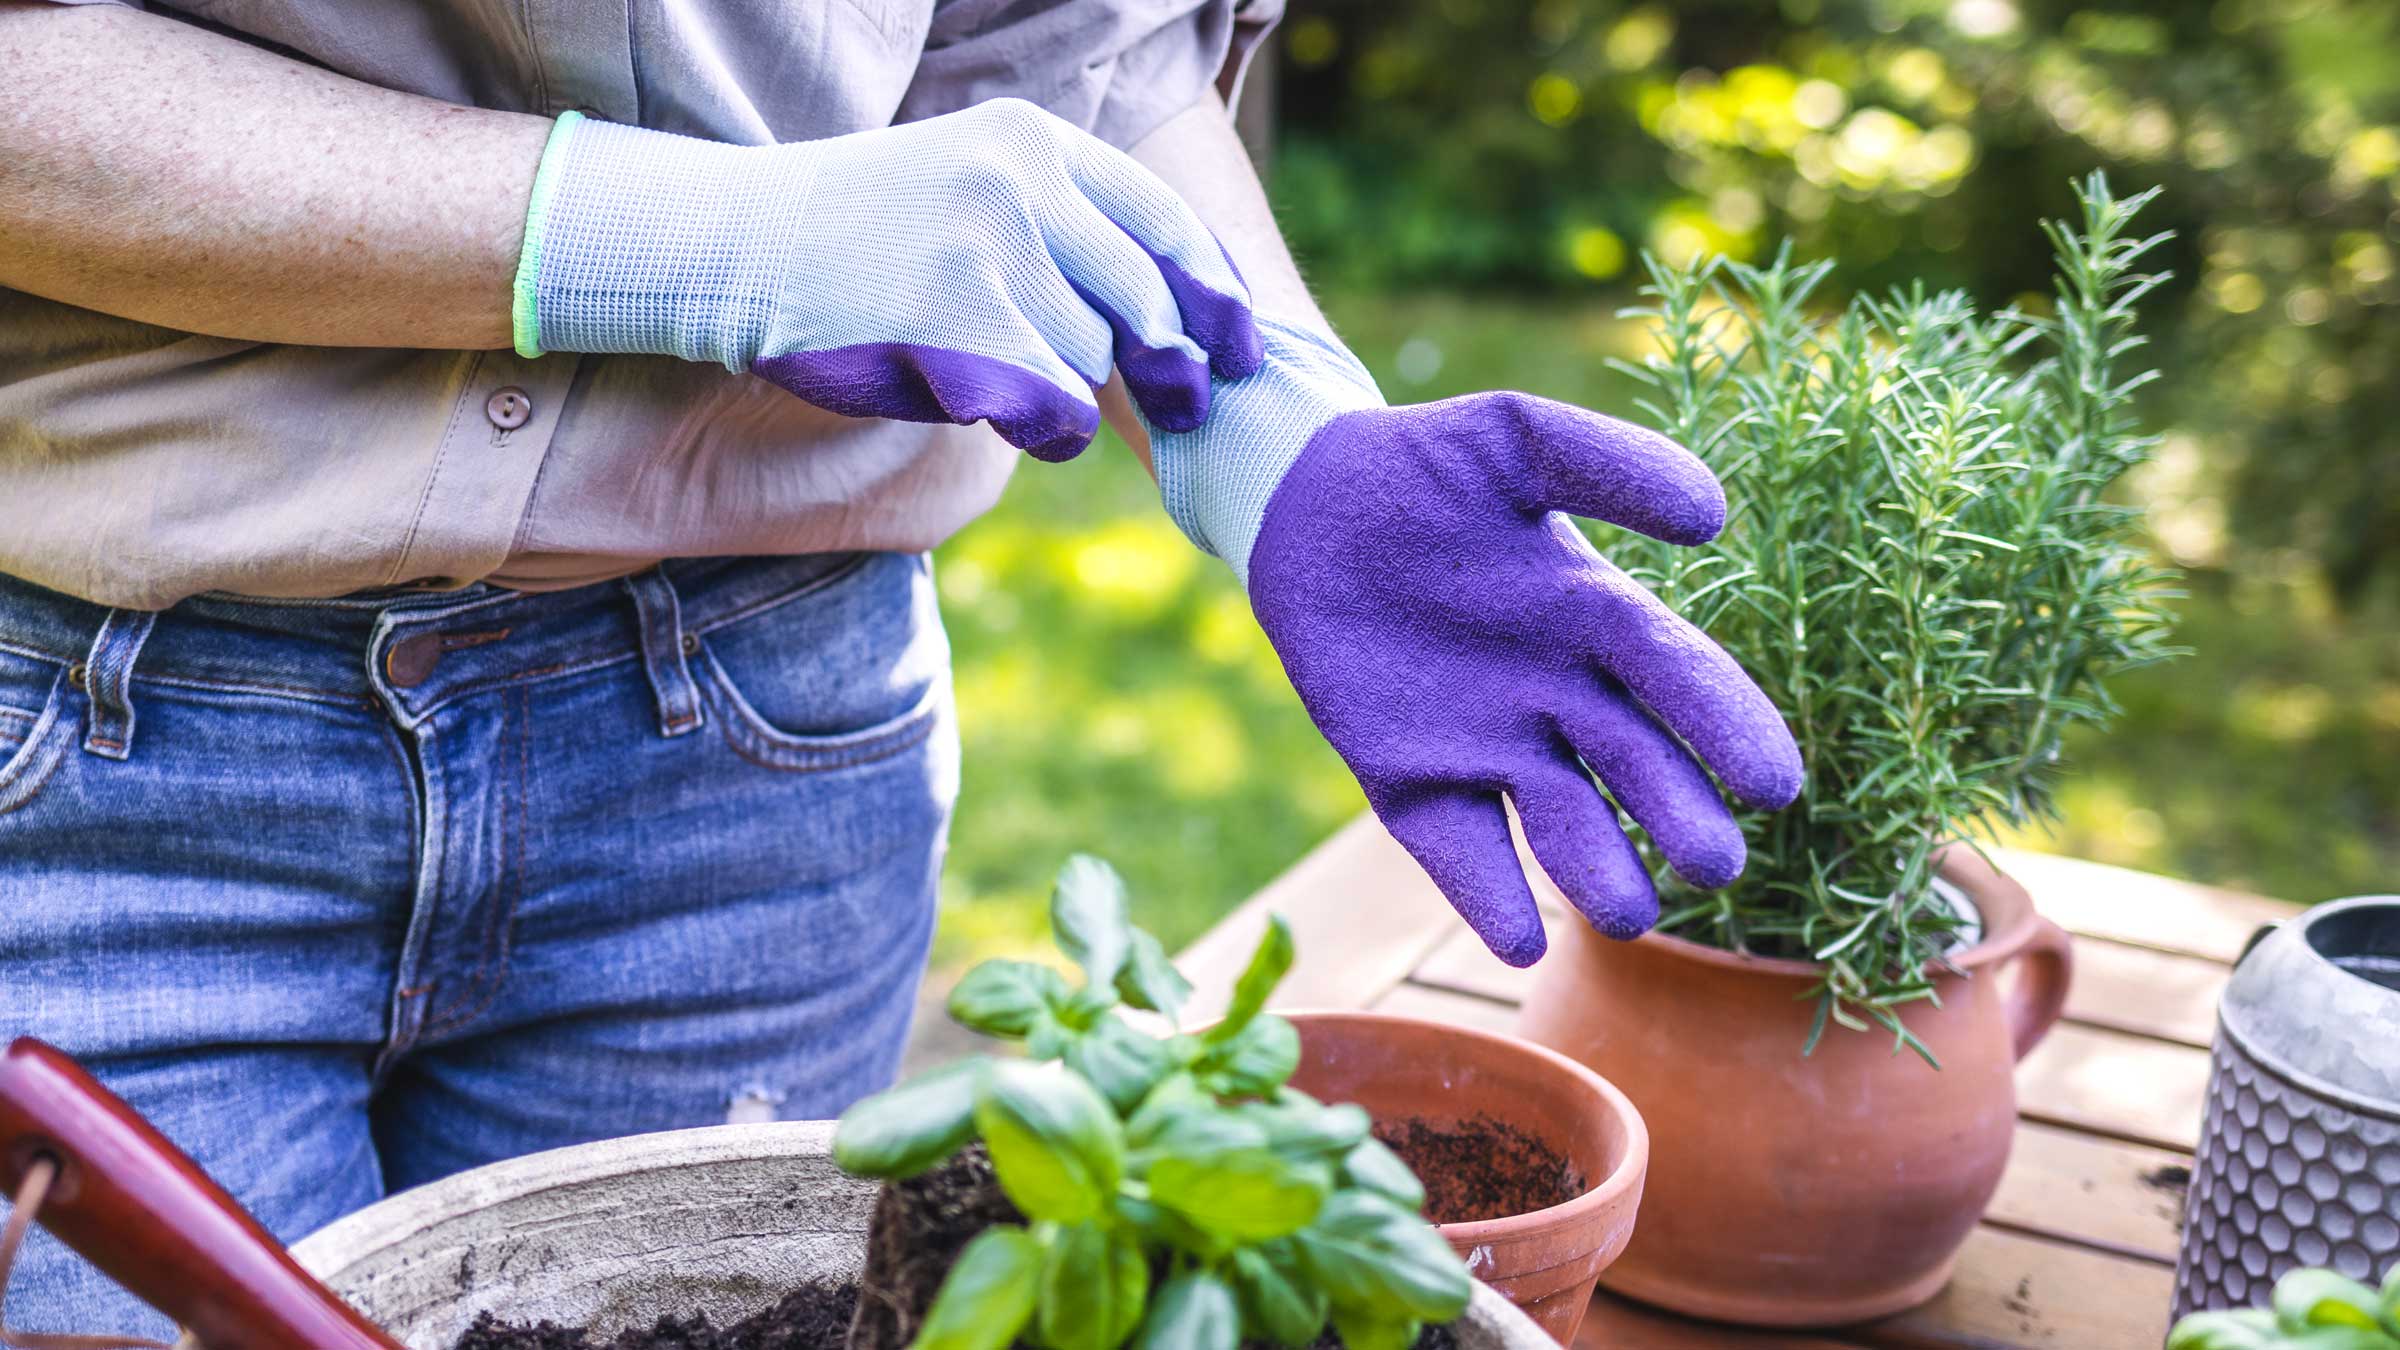 Woman putting on garden gloves